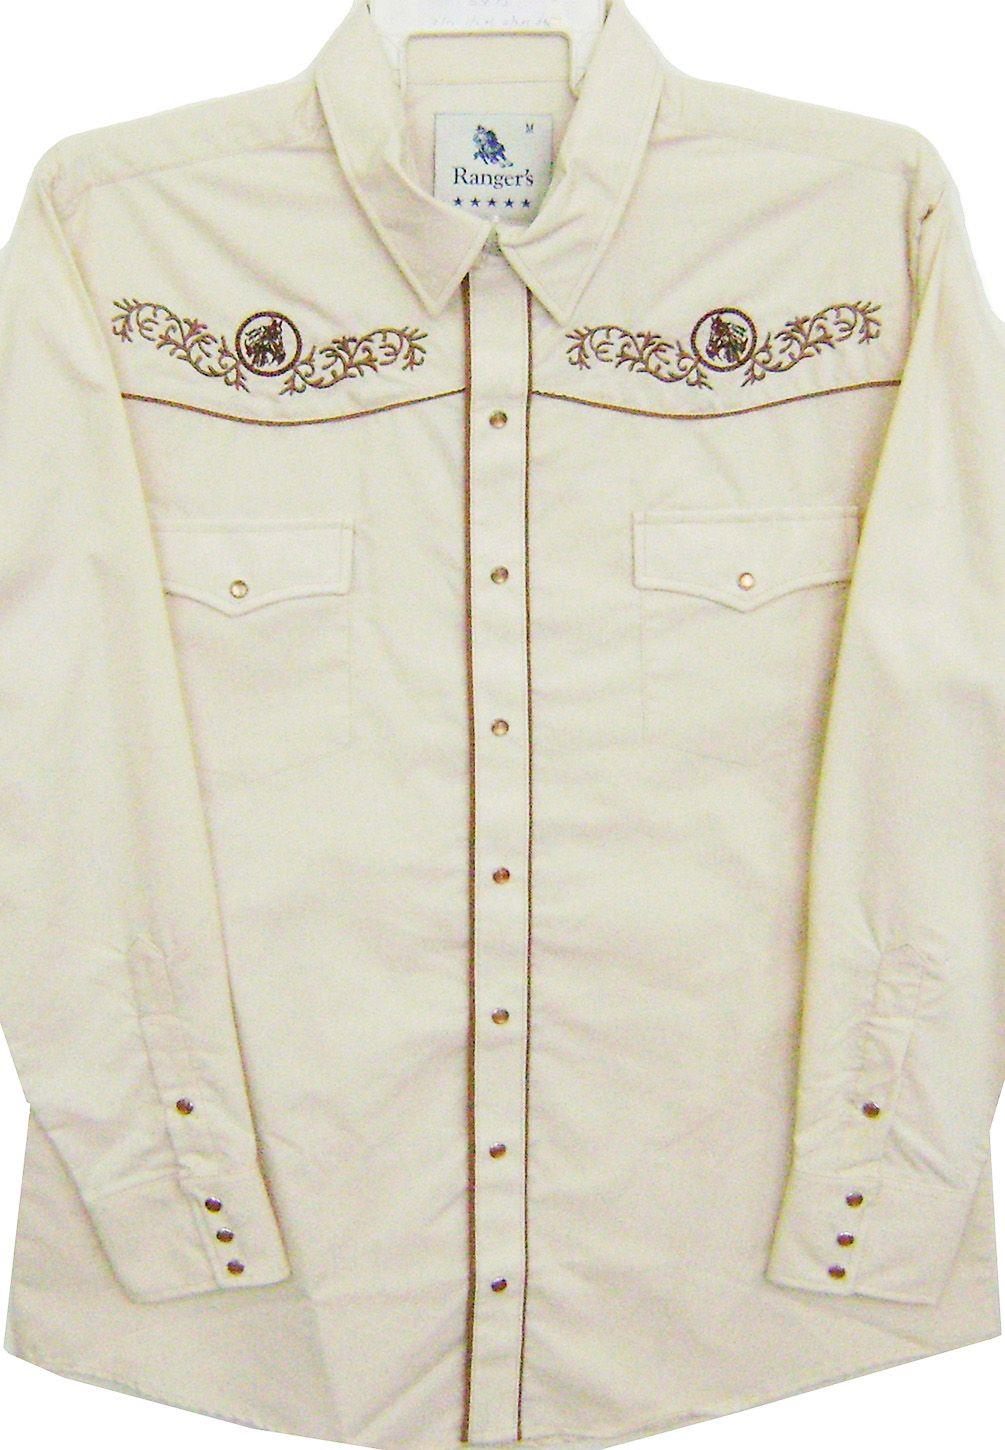 Embroidered Beige Western Shirt, Little Bit Western